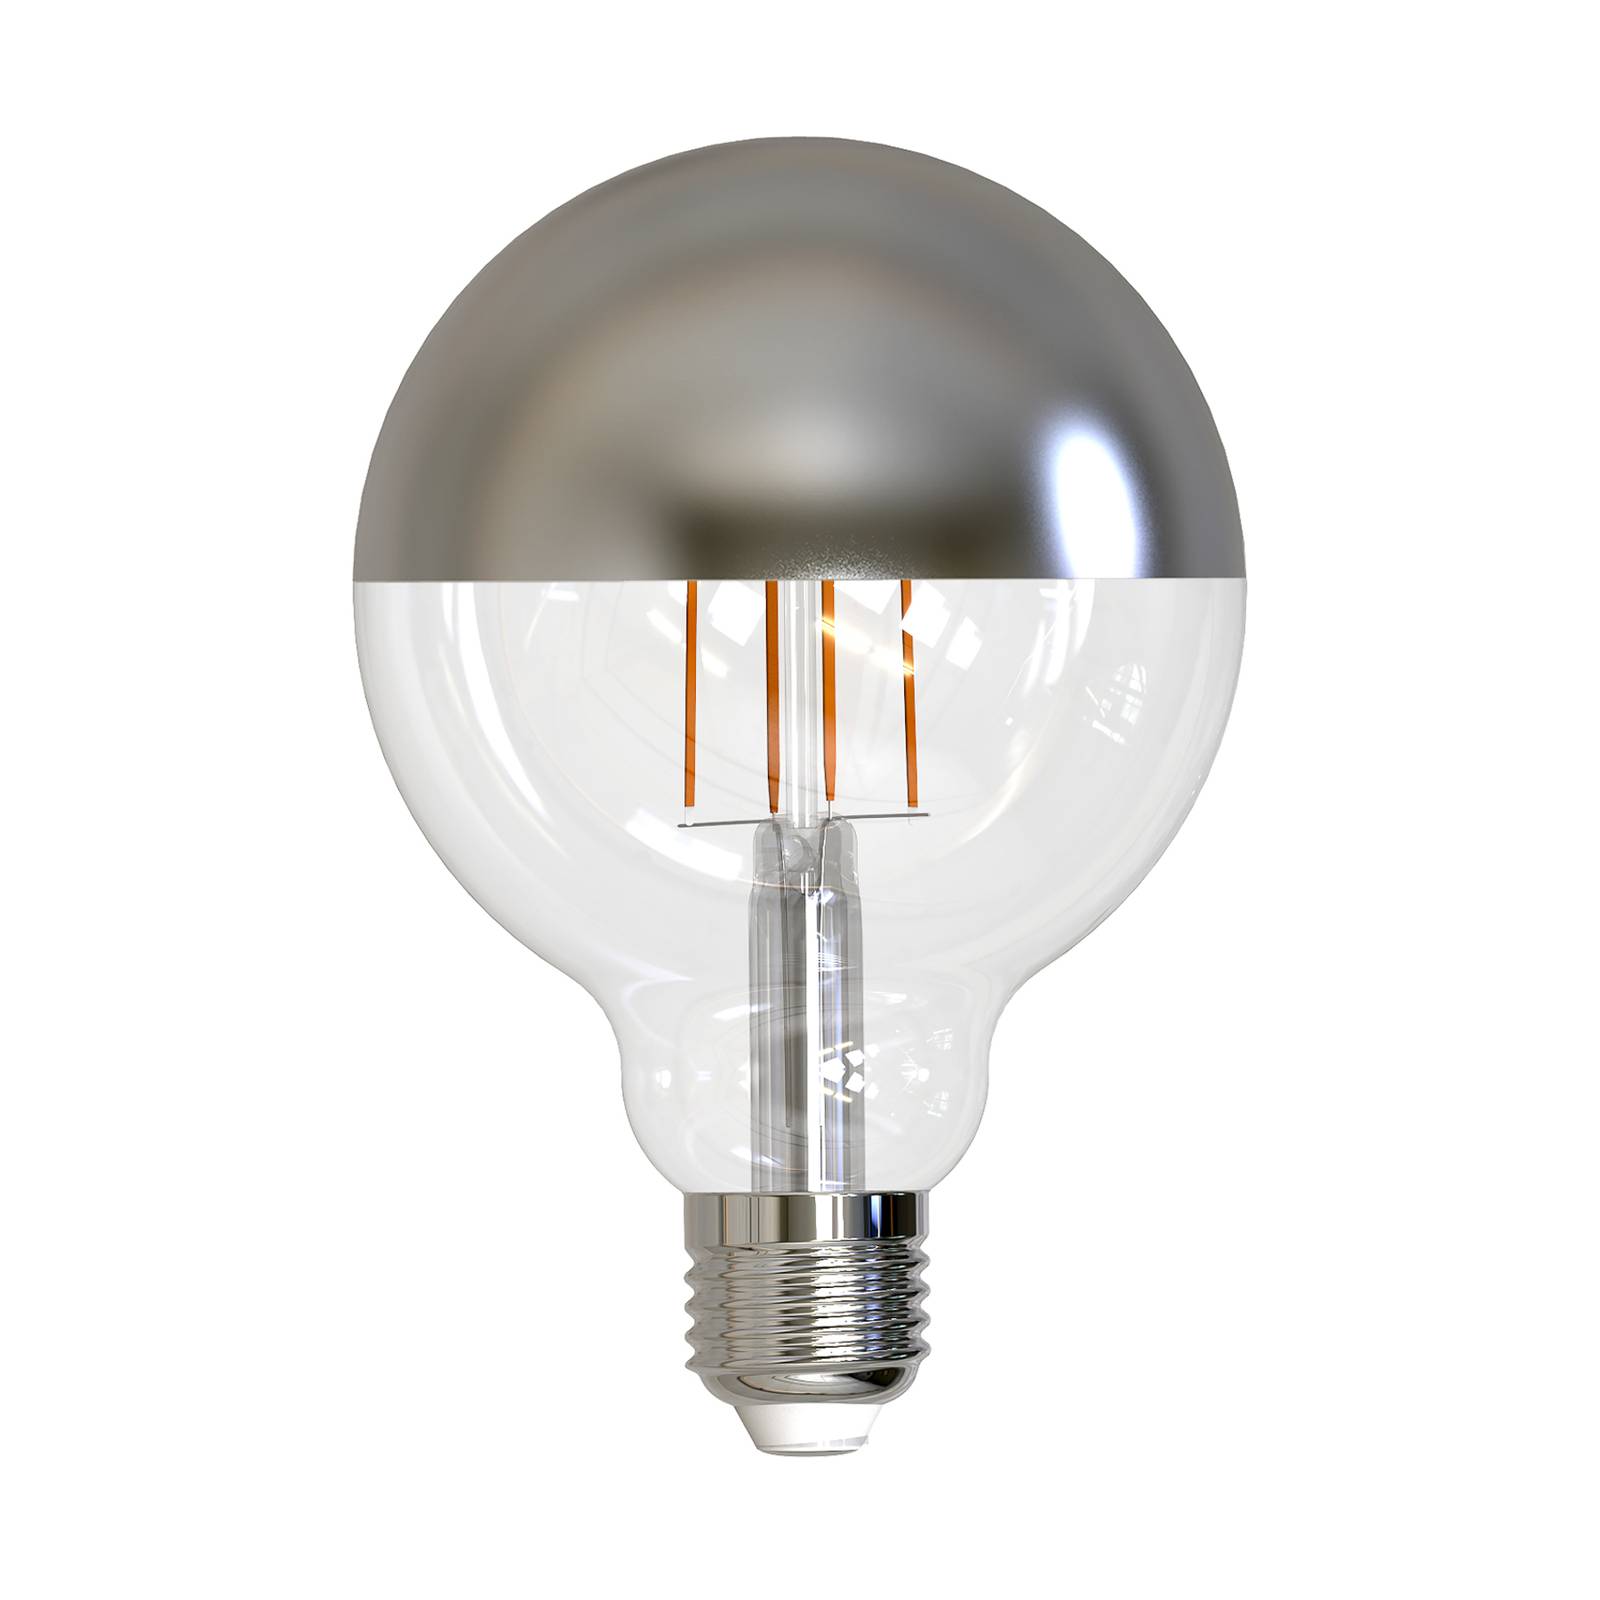 Mller-Licht Mller Licht LED globe E27 9W 927 dicroica argento